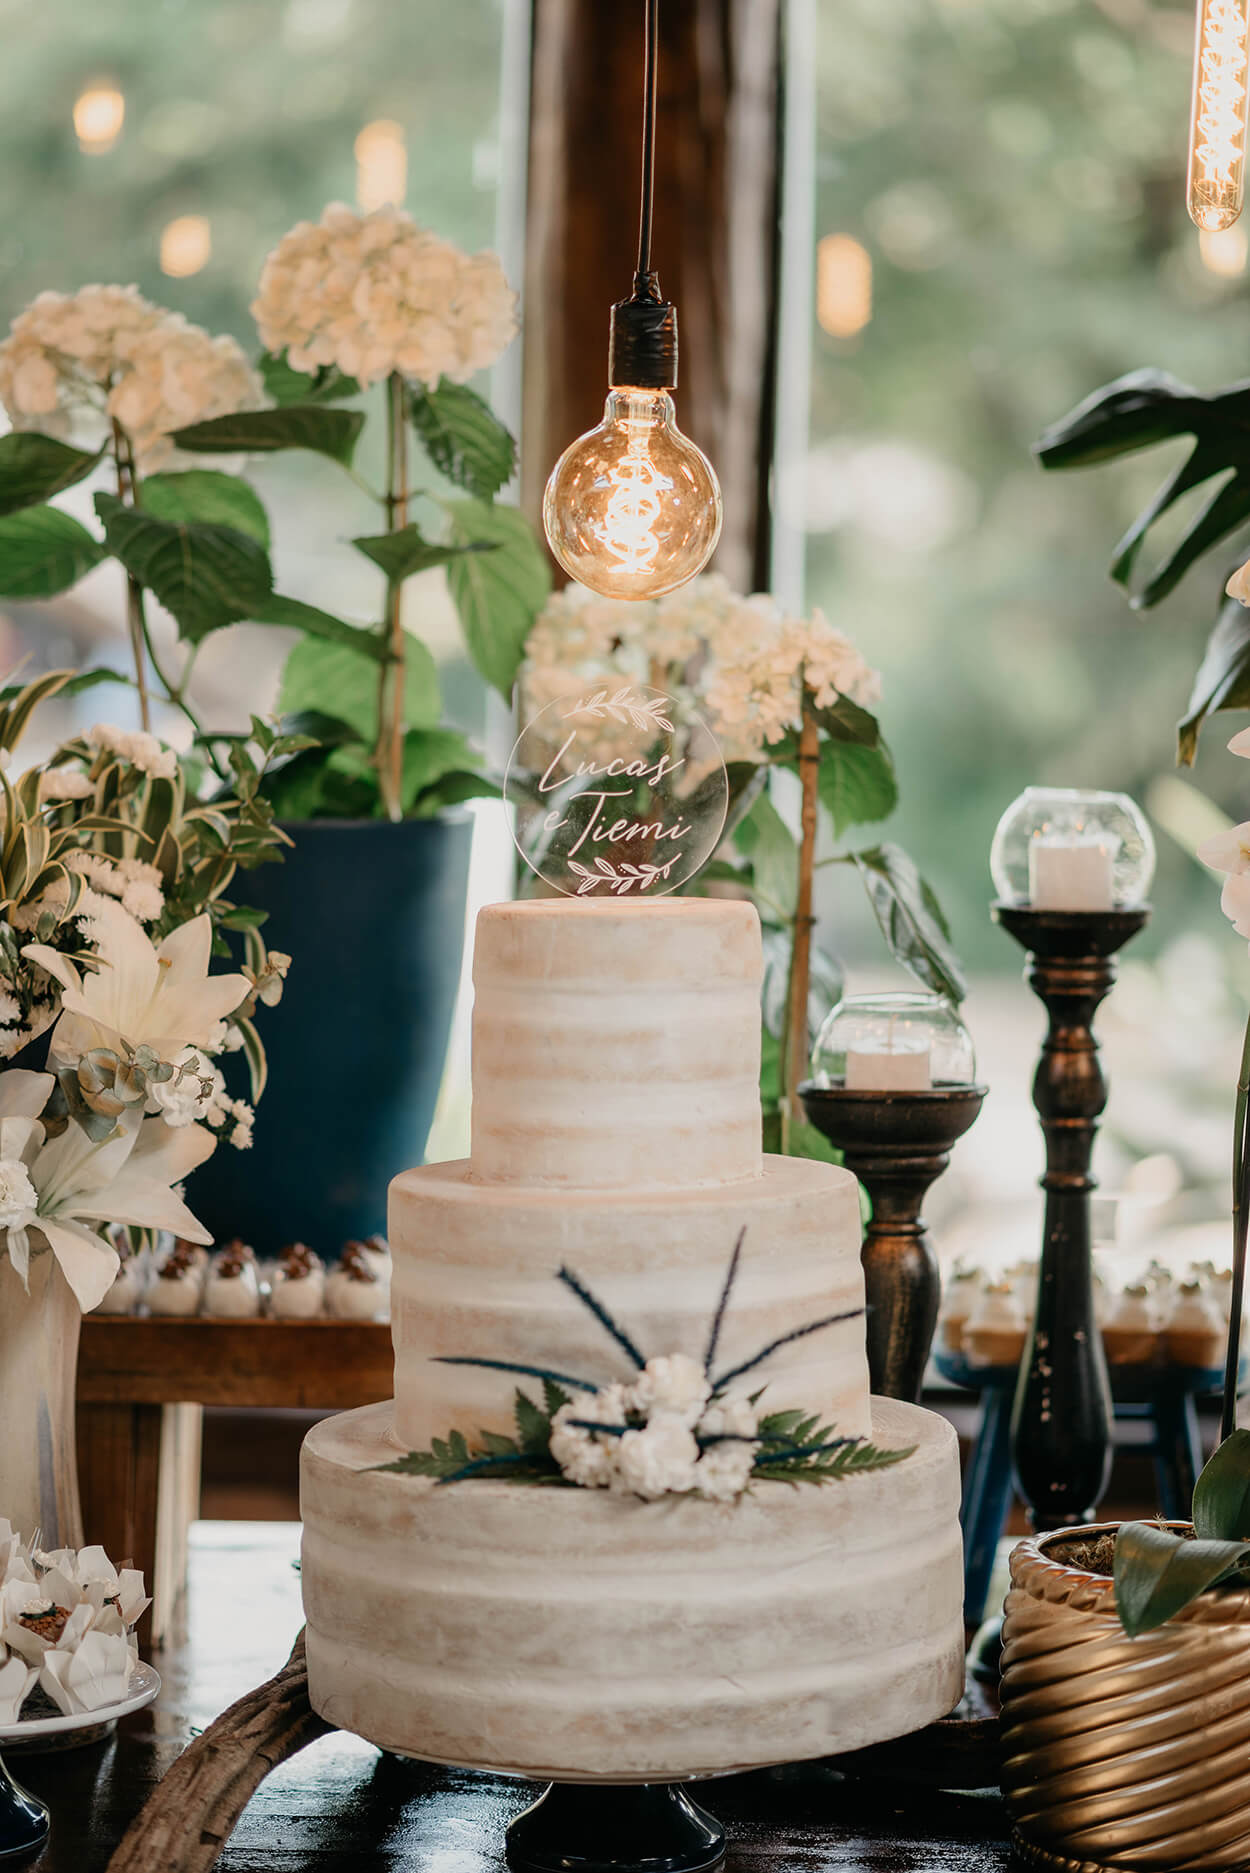 Bolo de casamento branco com três andares semi espatulado com flores brancas e topo com círculo em acrílico com o nome dos noivos